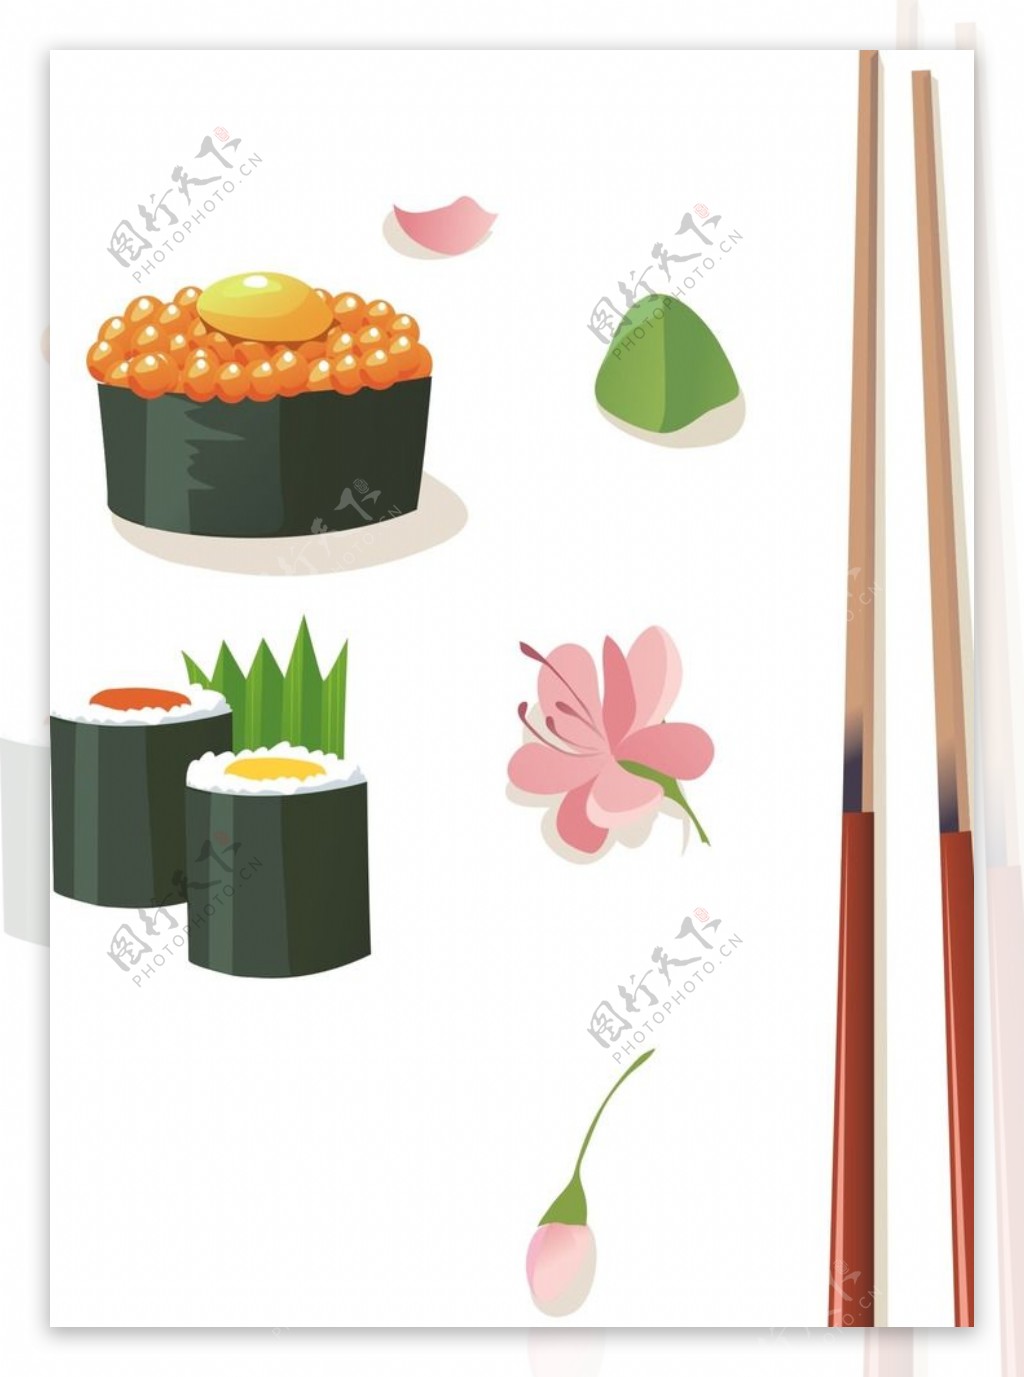 矢量筷子寿司图片